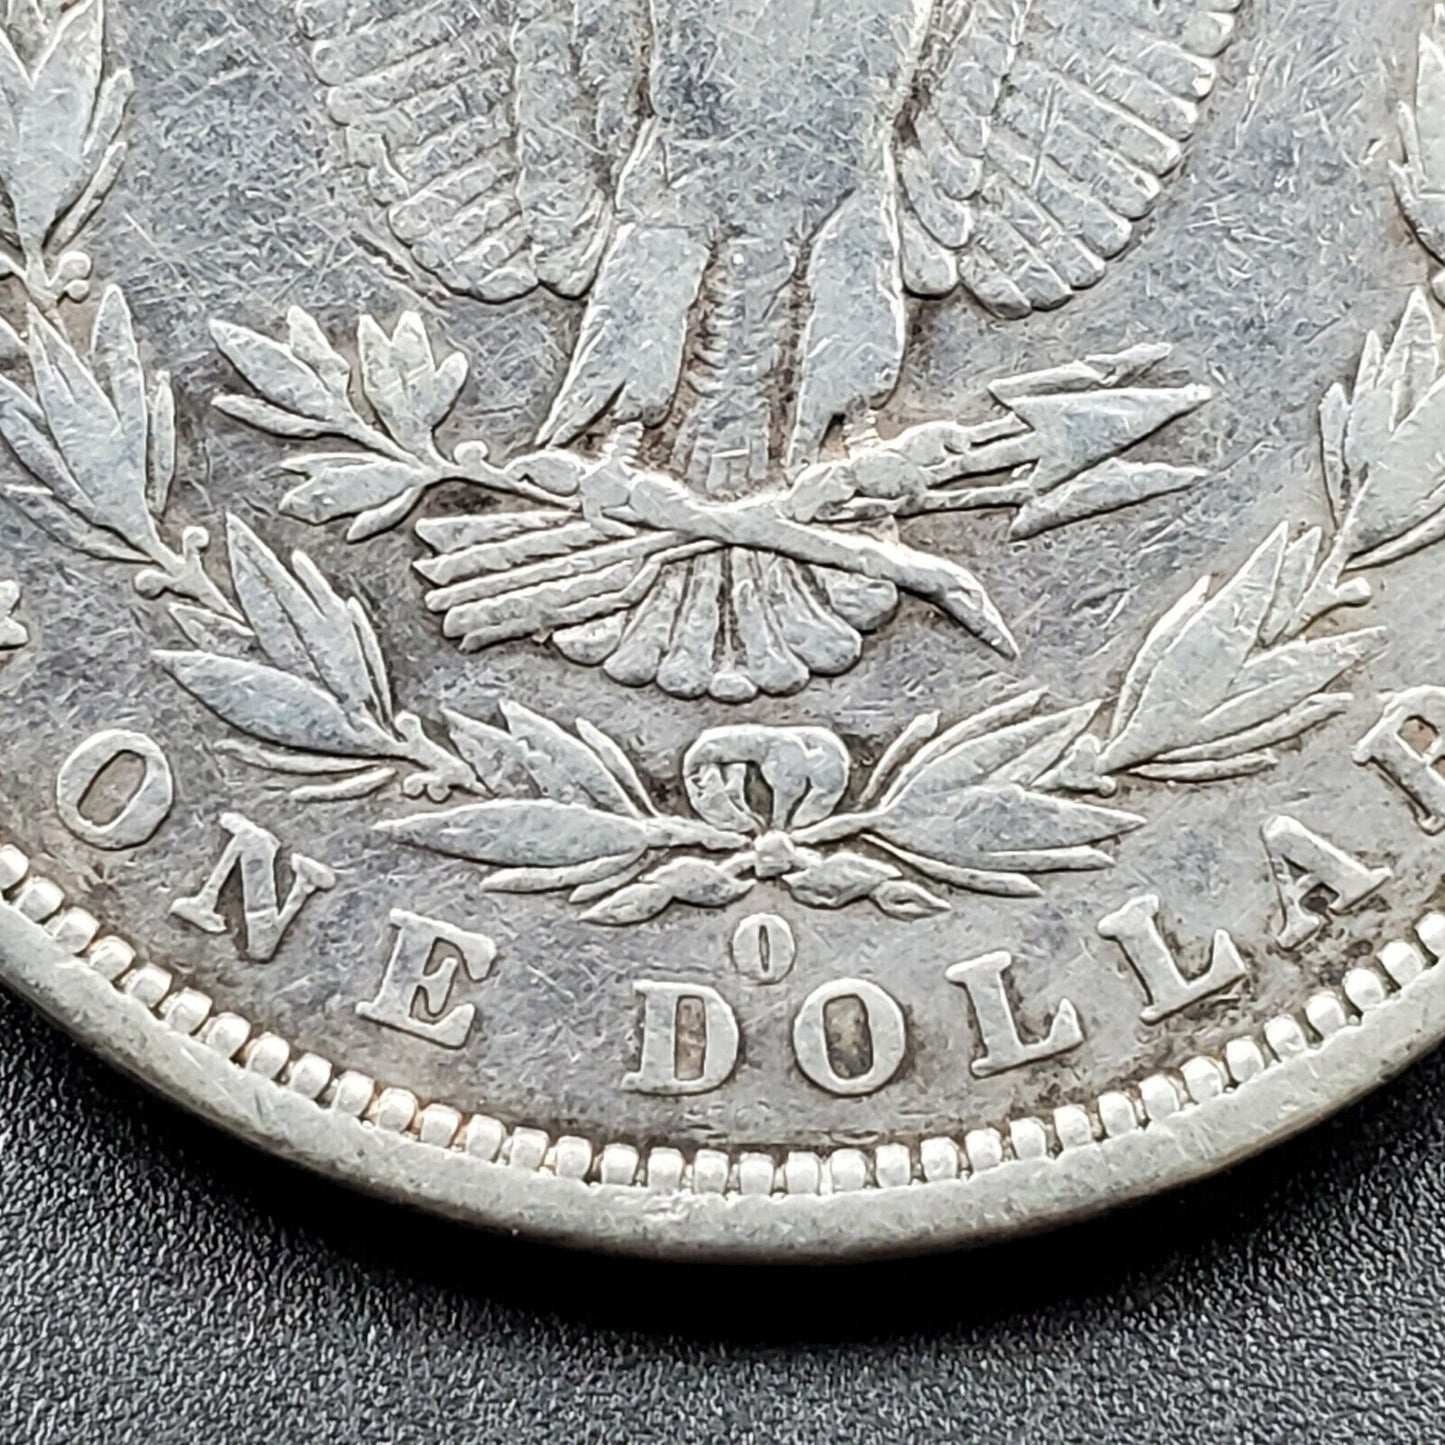 1879 O Morgan Silver Dollar Coin Choice VF Very Fine Circulated Nice Coin